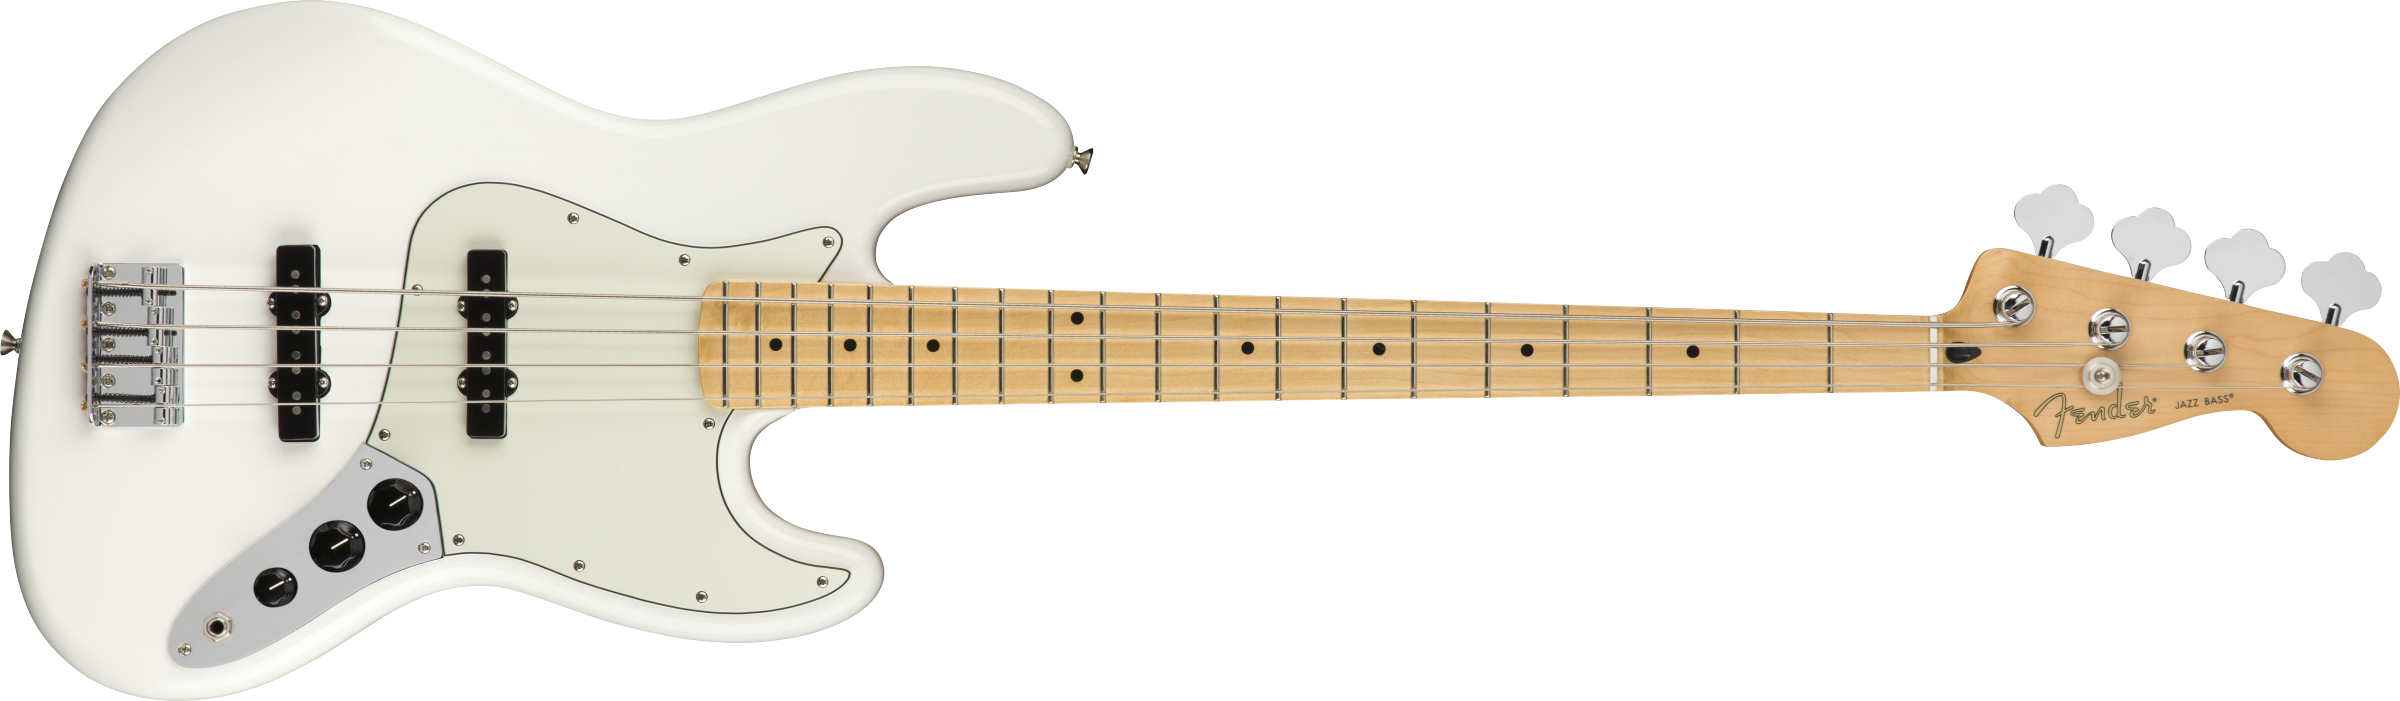 Fender® Player Jazz Bass®, Maple Fingerboard, Polar White